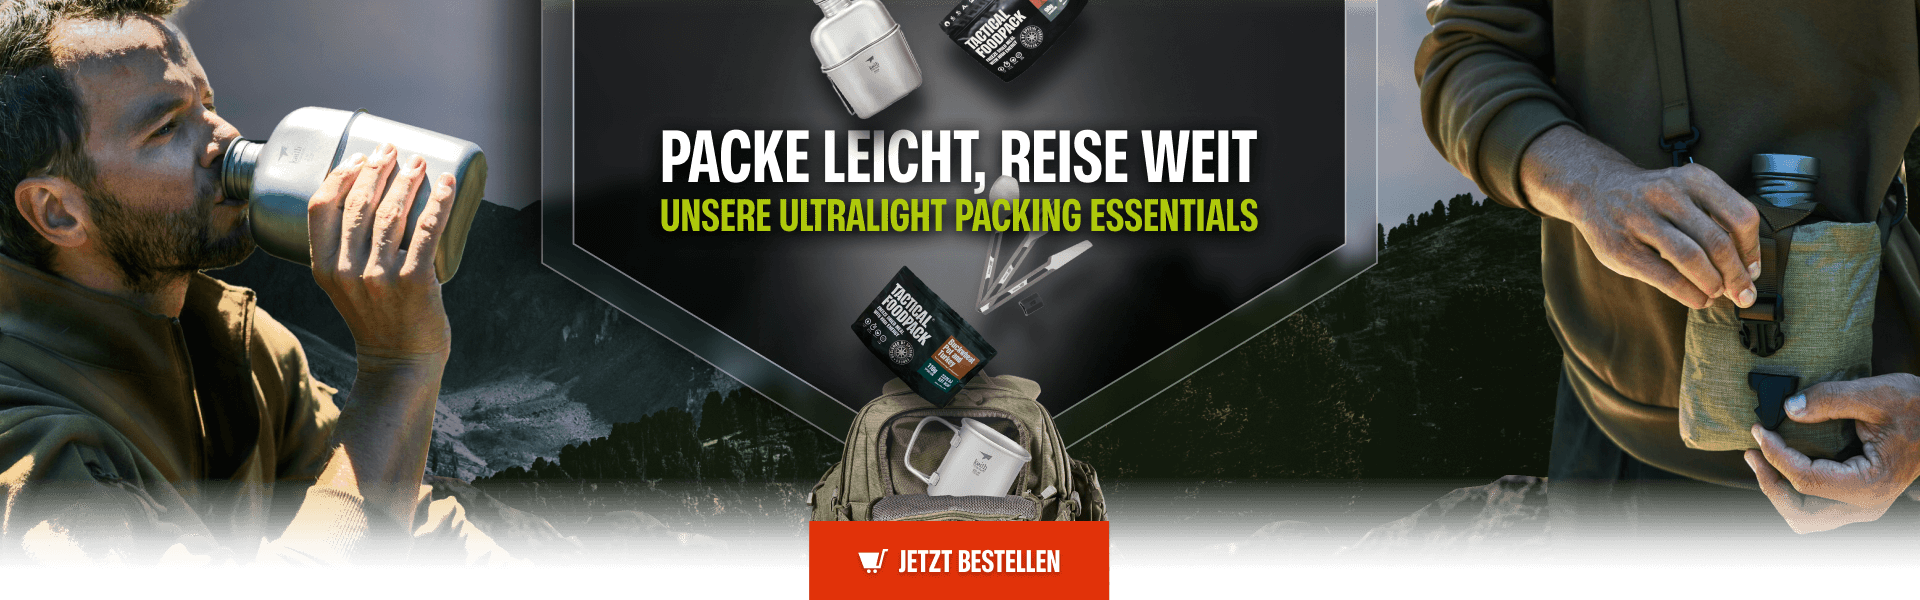 Packe leicht, reise weit: Unsere Ultralight Packing Essentials